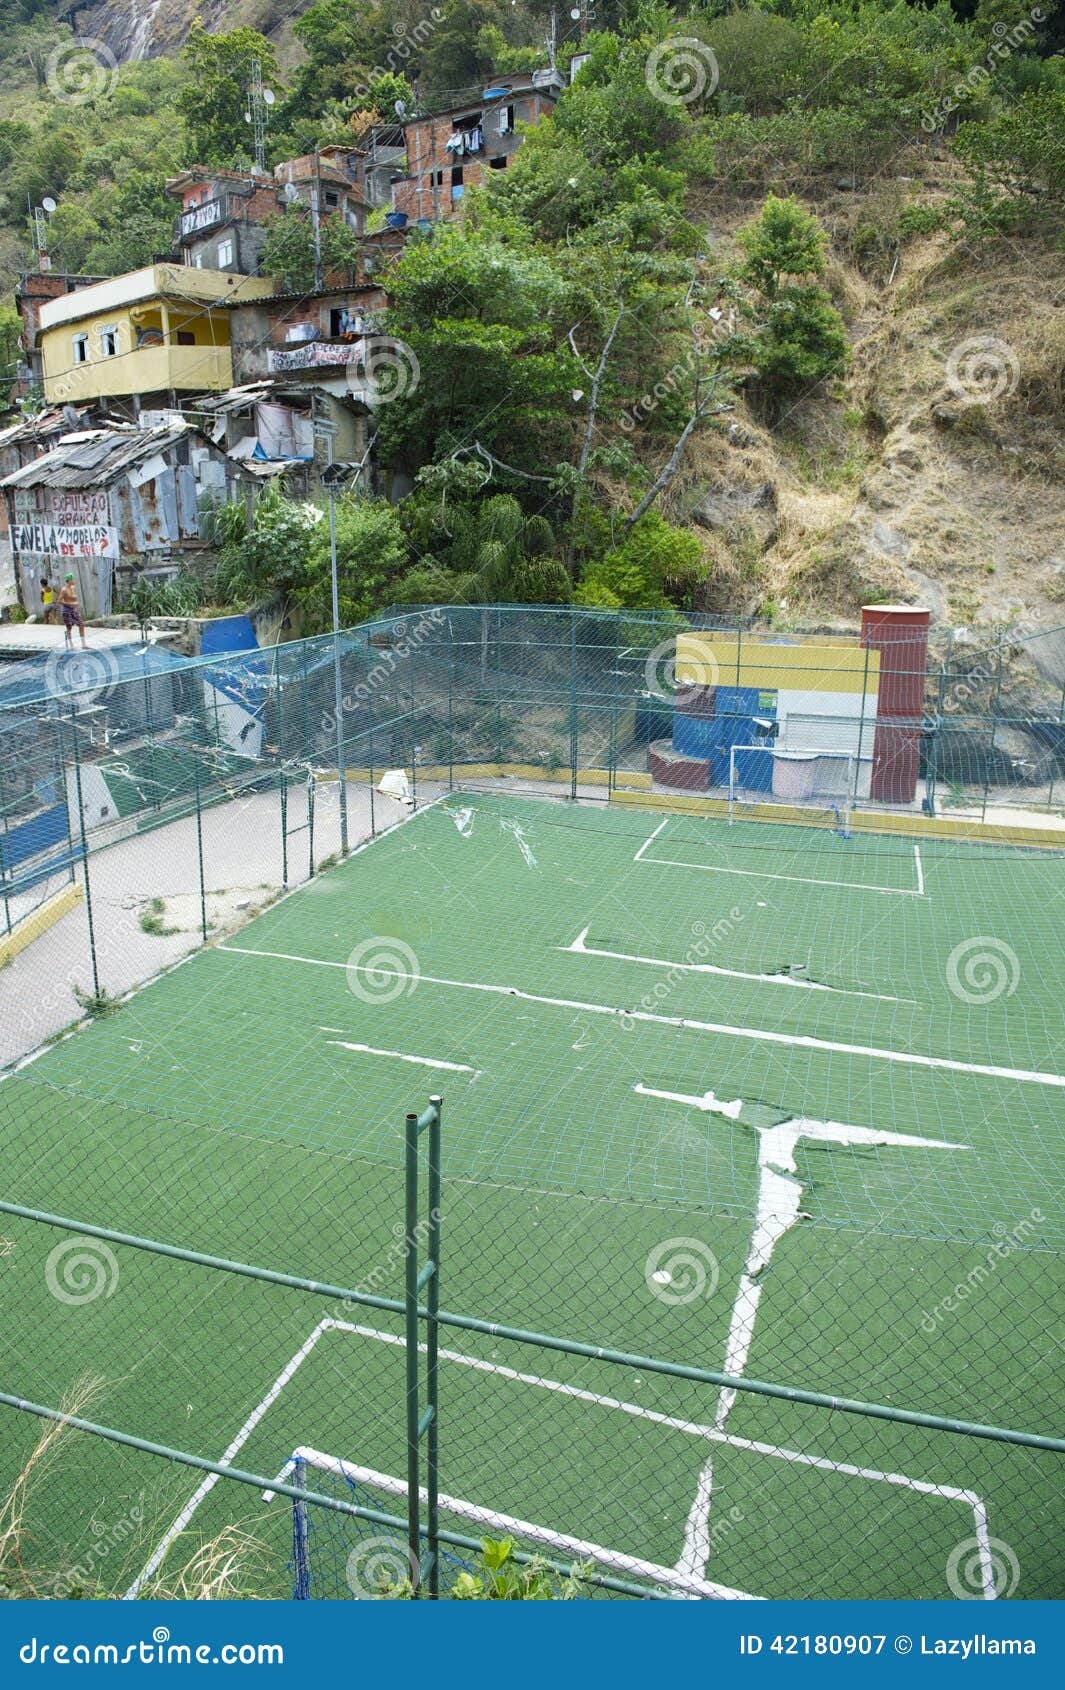 FH - A football pitch for the Jacarezinho favela